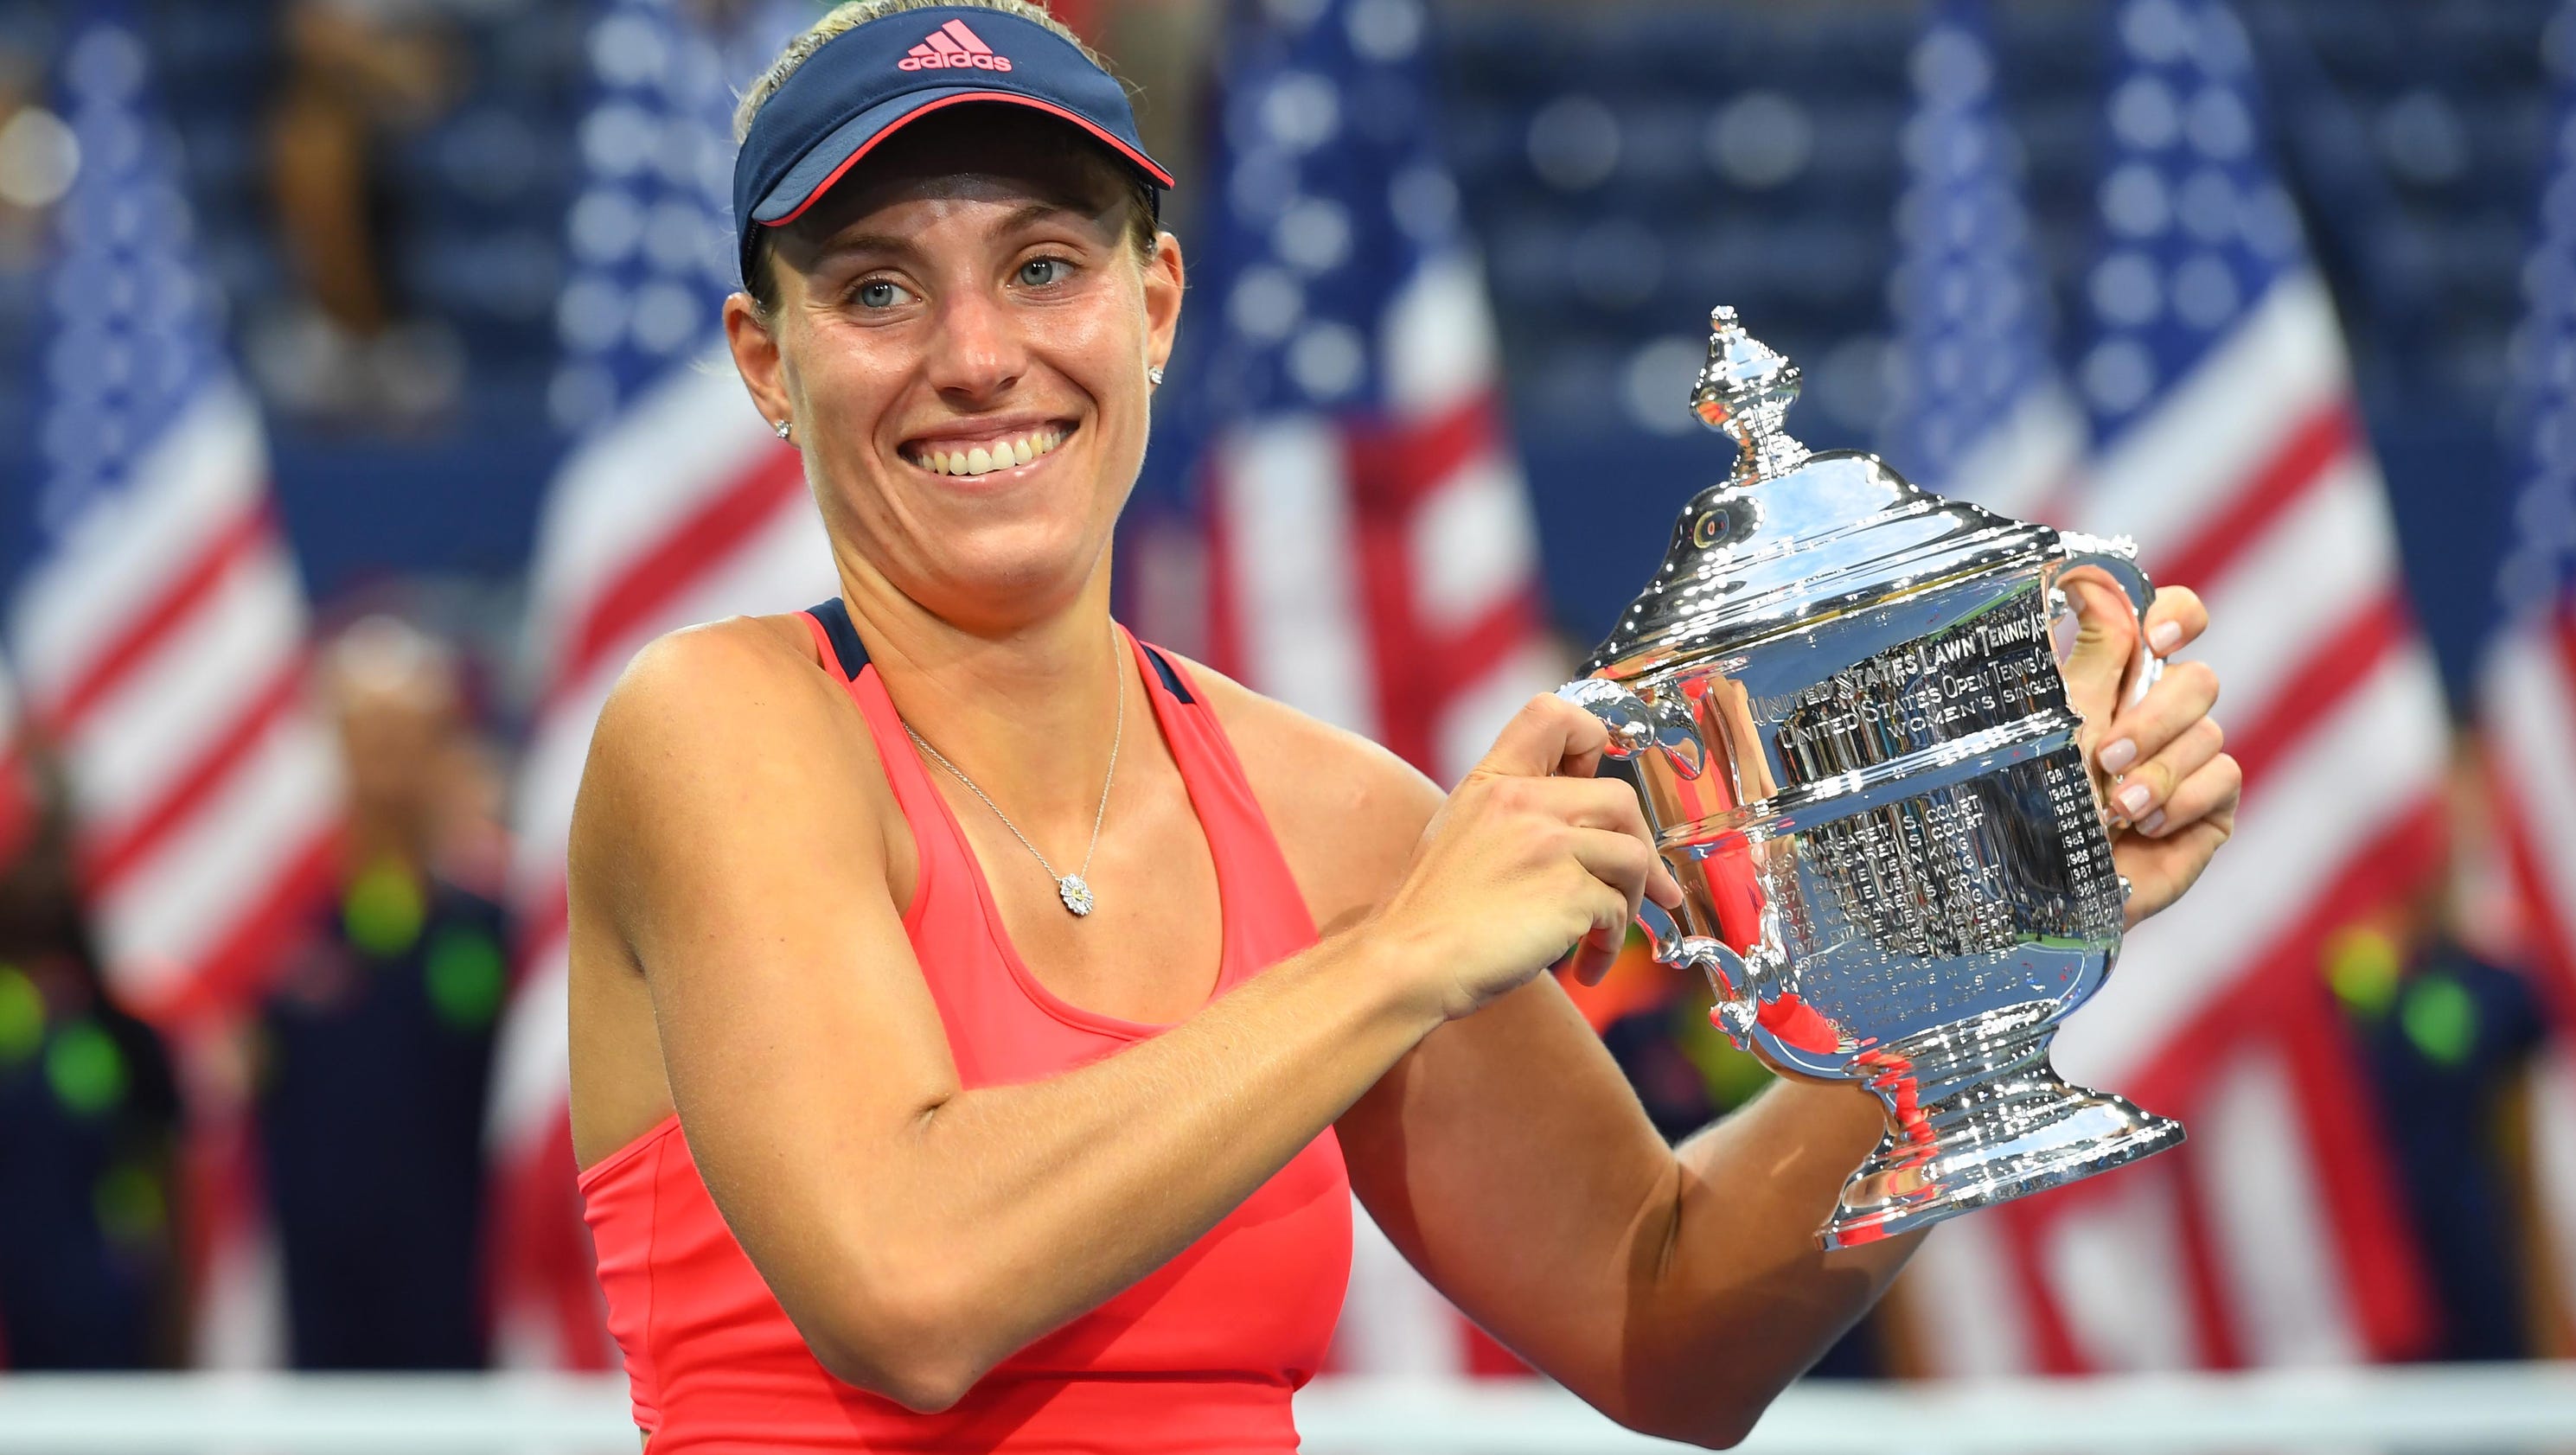 Best of U.S. Open women's final